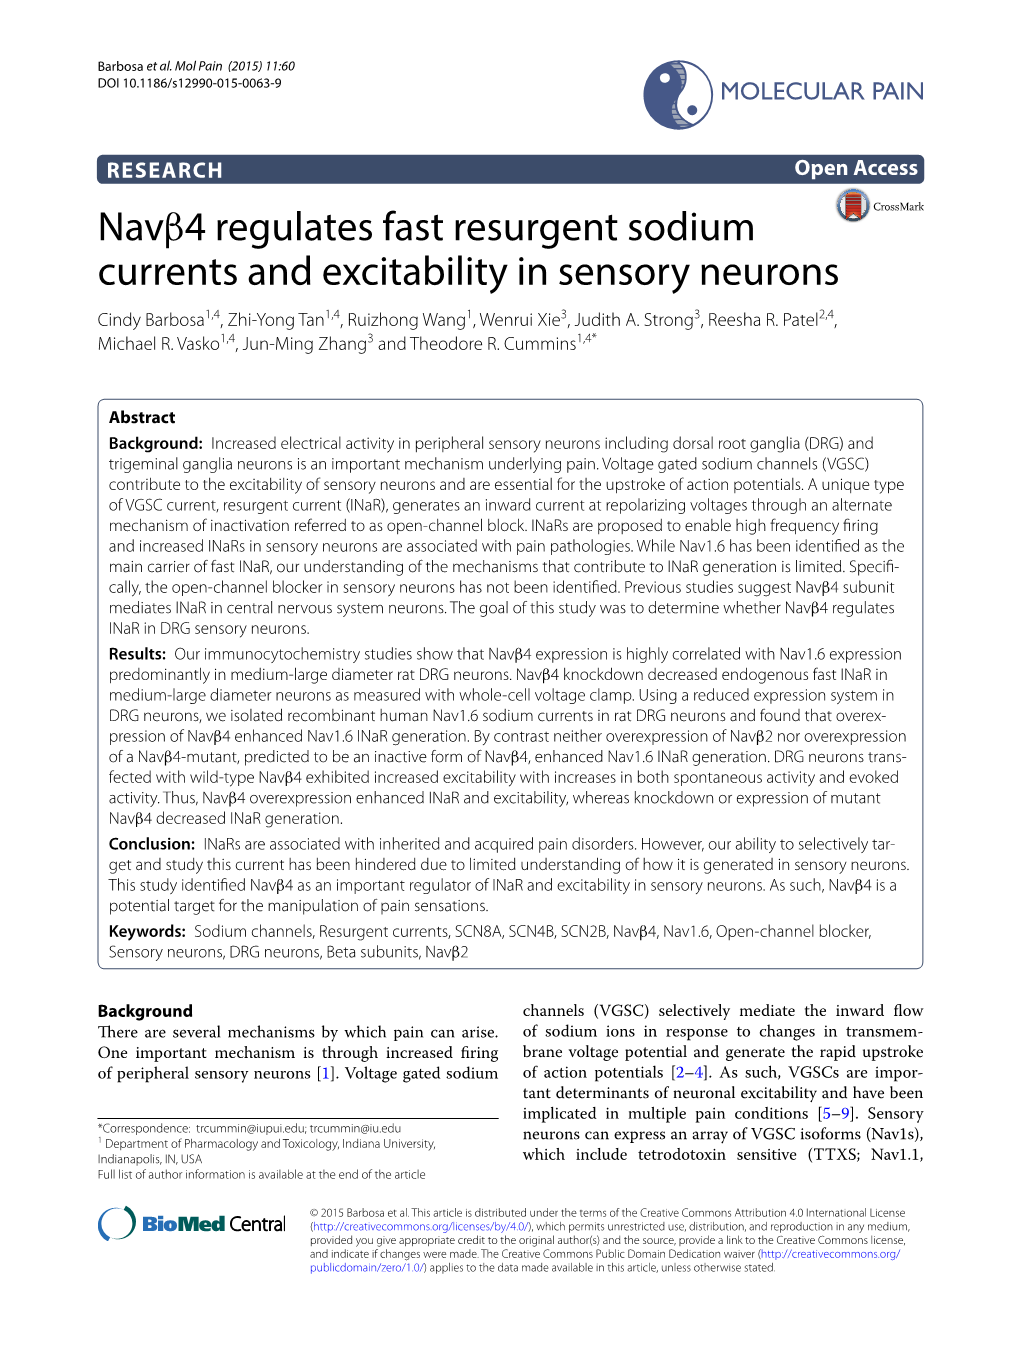 Navβ4 Regulates Fast Resurgent Sodium Currents and Excitability in Sensory Neurons Cindy Barbosa1,4, Zhi‑Yong Tan1,4, Ruizhong Wang1, Wenrui Xie3, Judith A